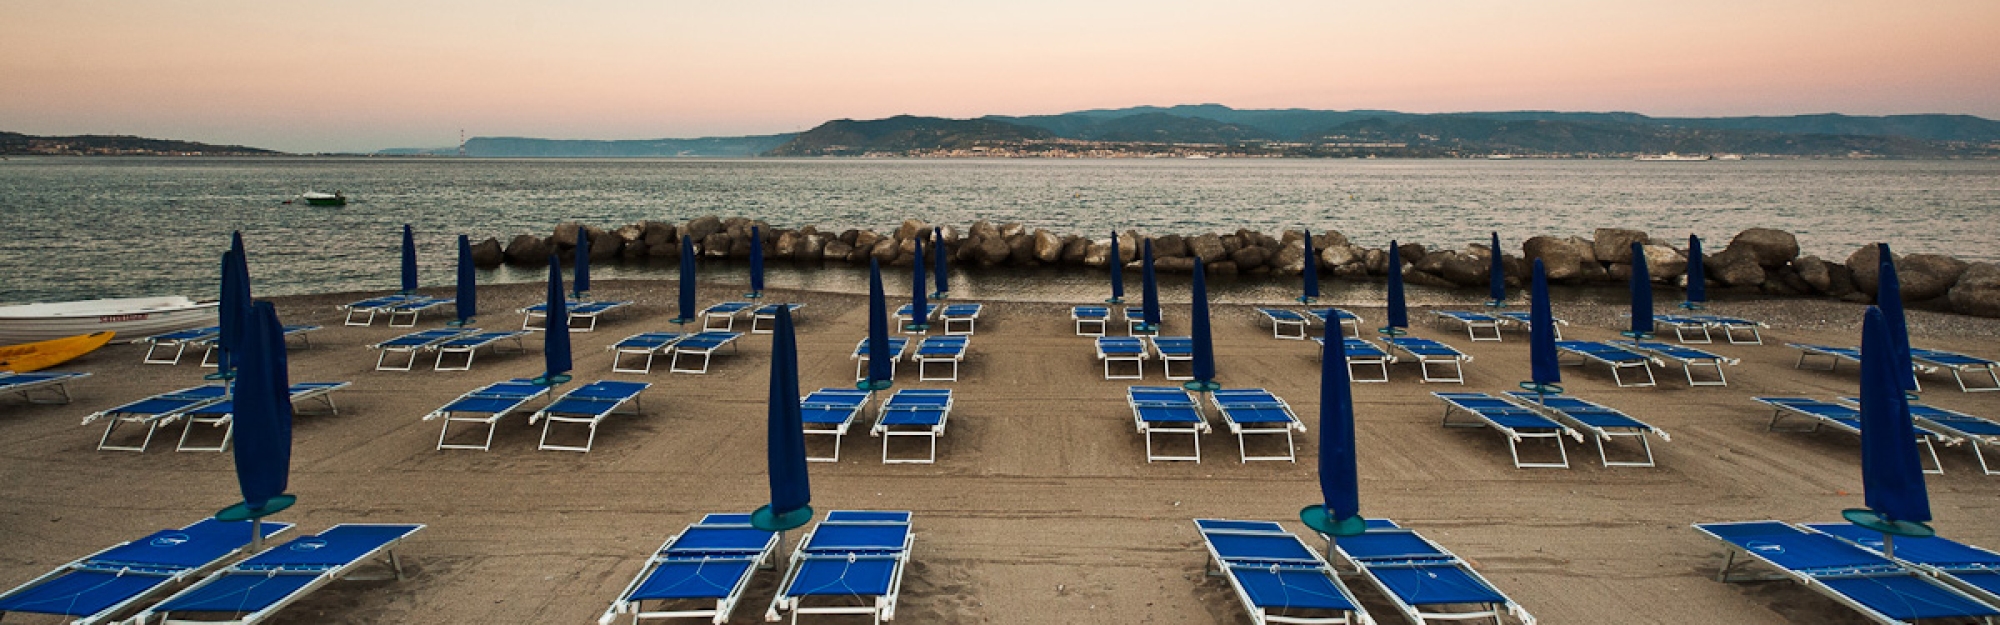 La Spiaggetta Beach Club  Villaggio Contemplazione - Messina